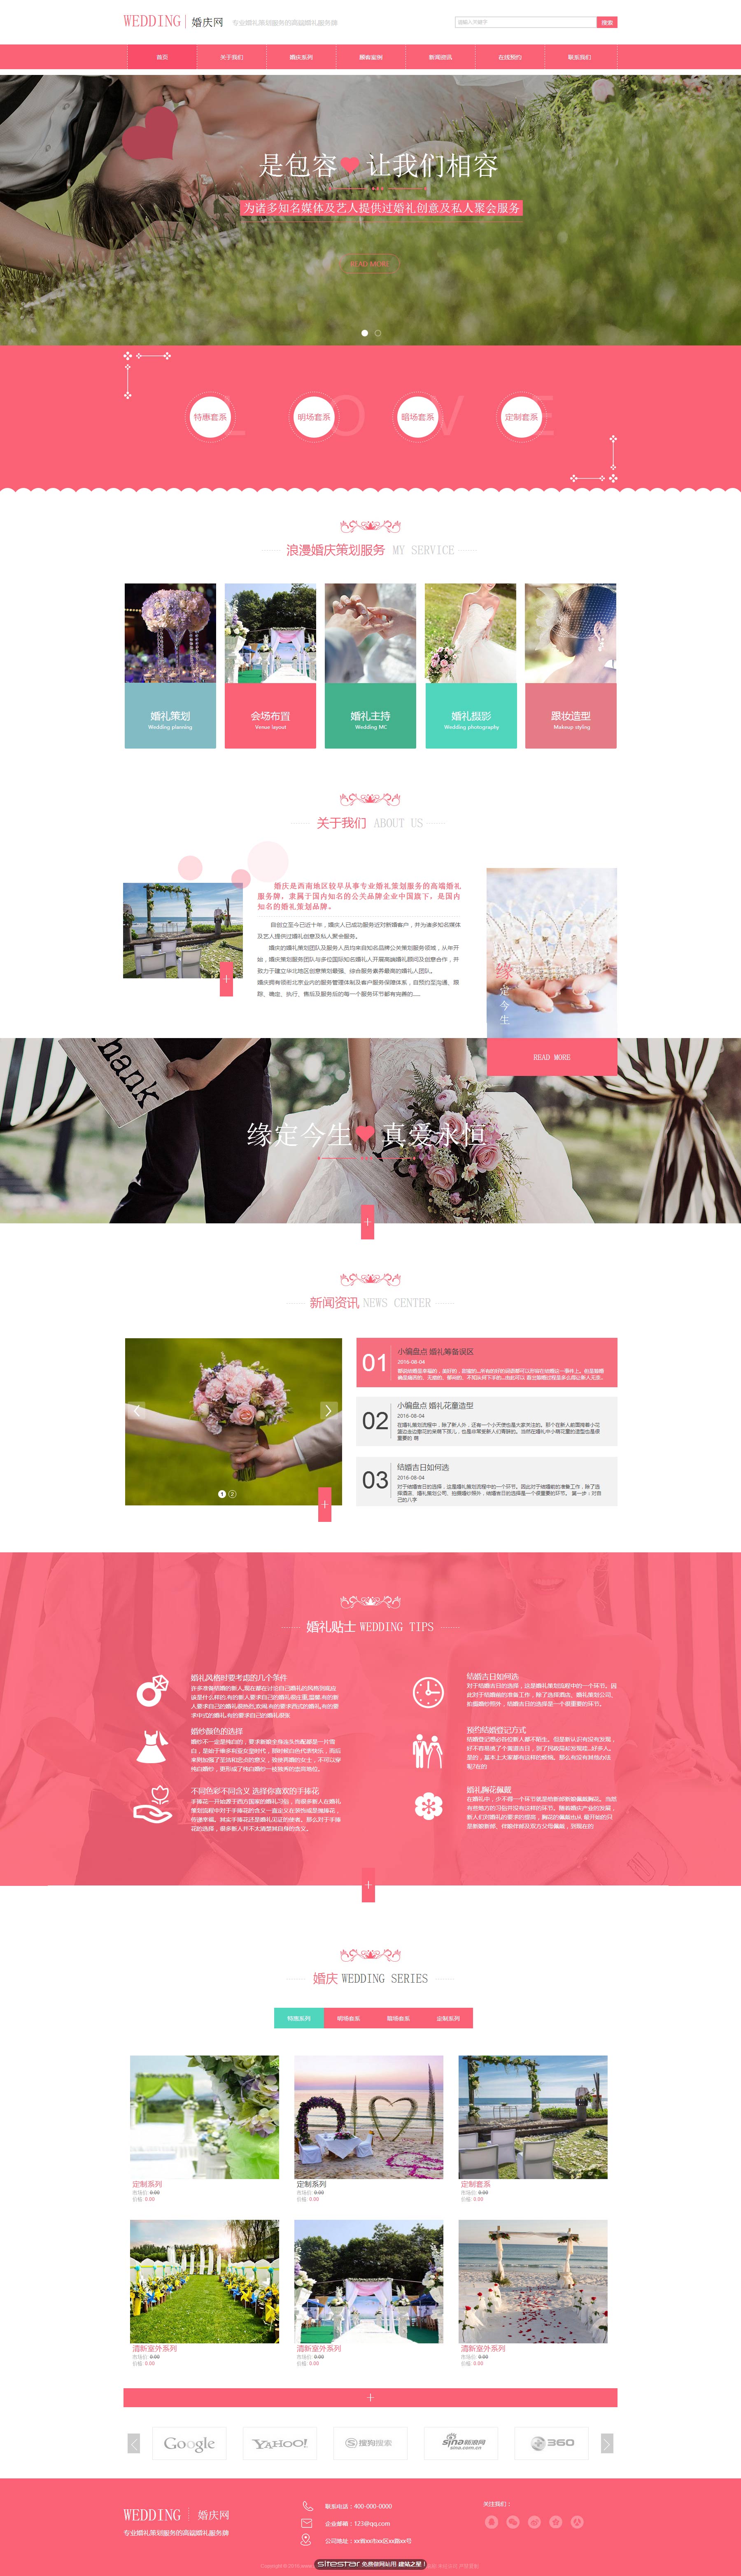 婚礼、婚庆网站模板-wedding-77